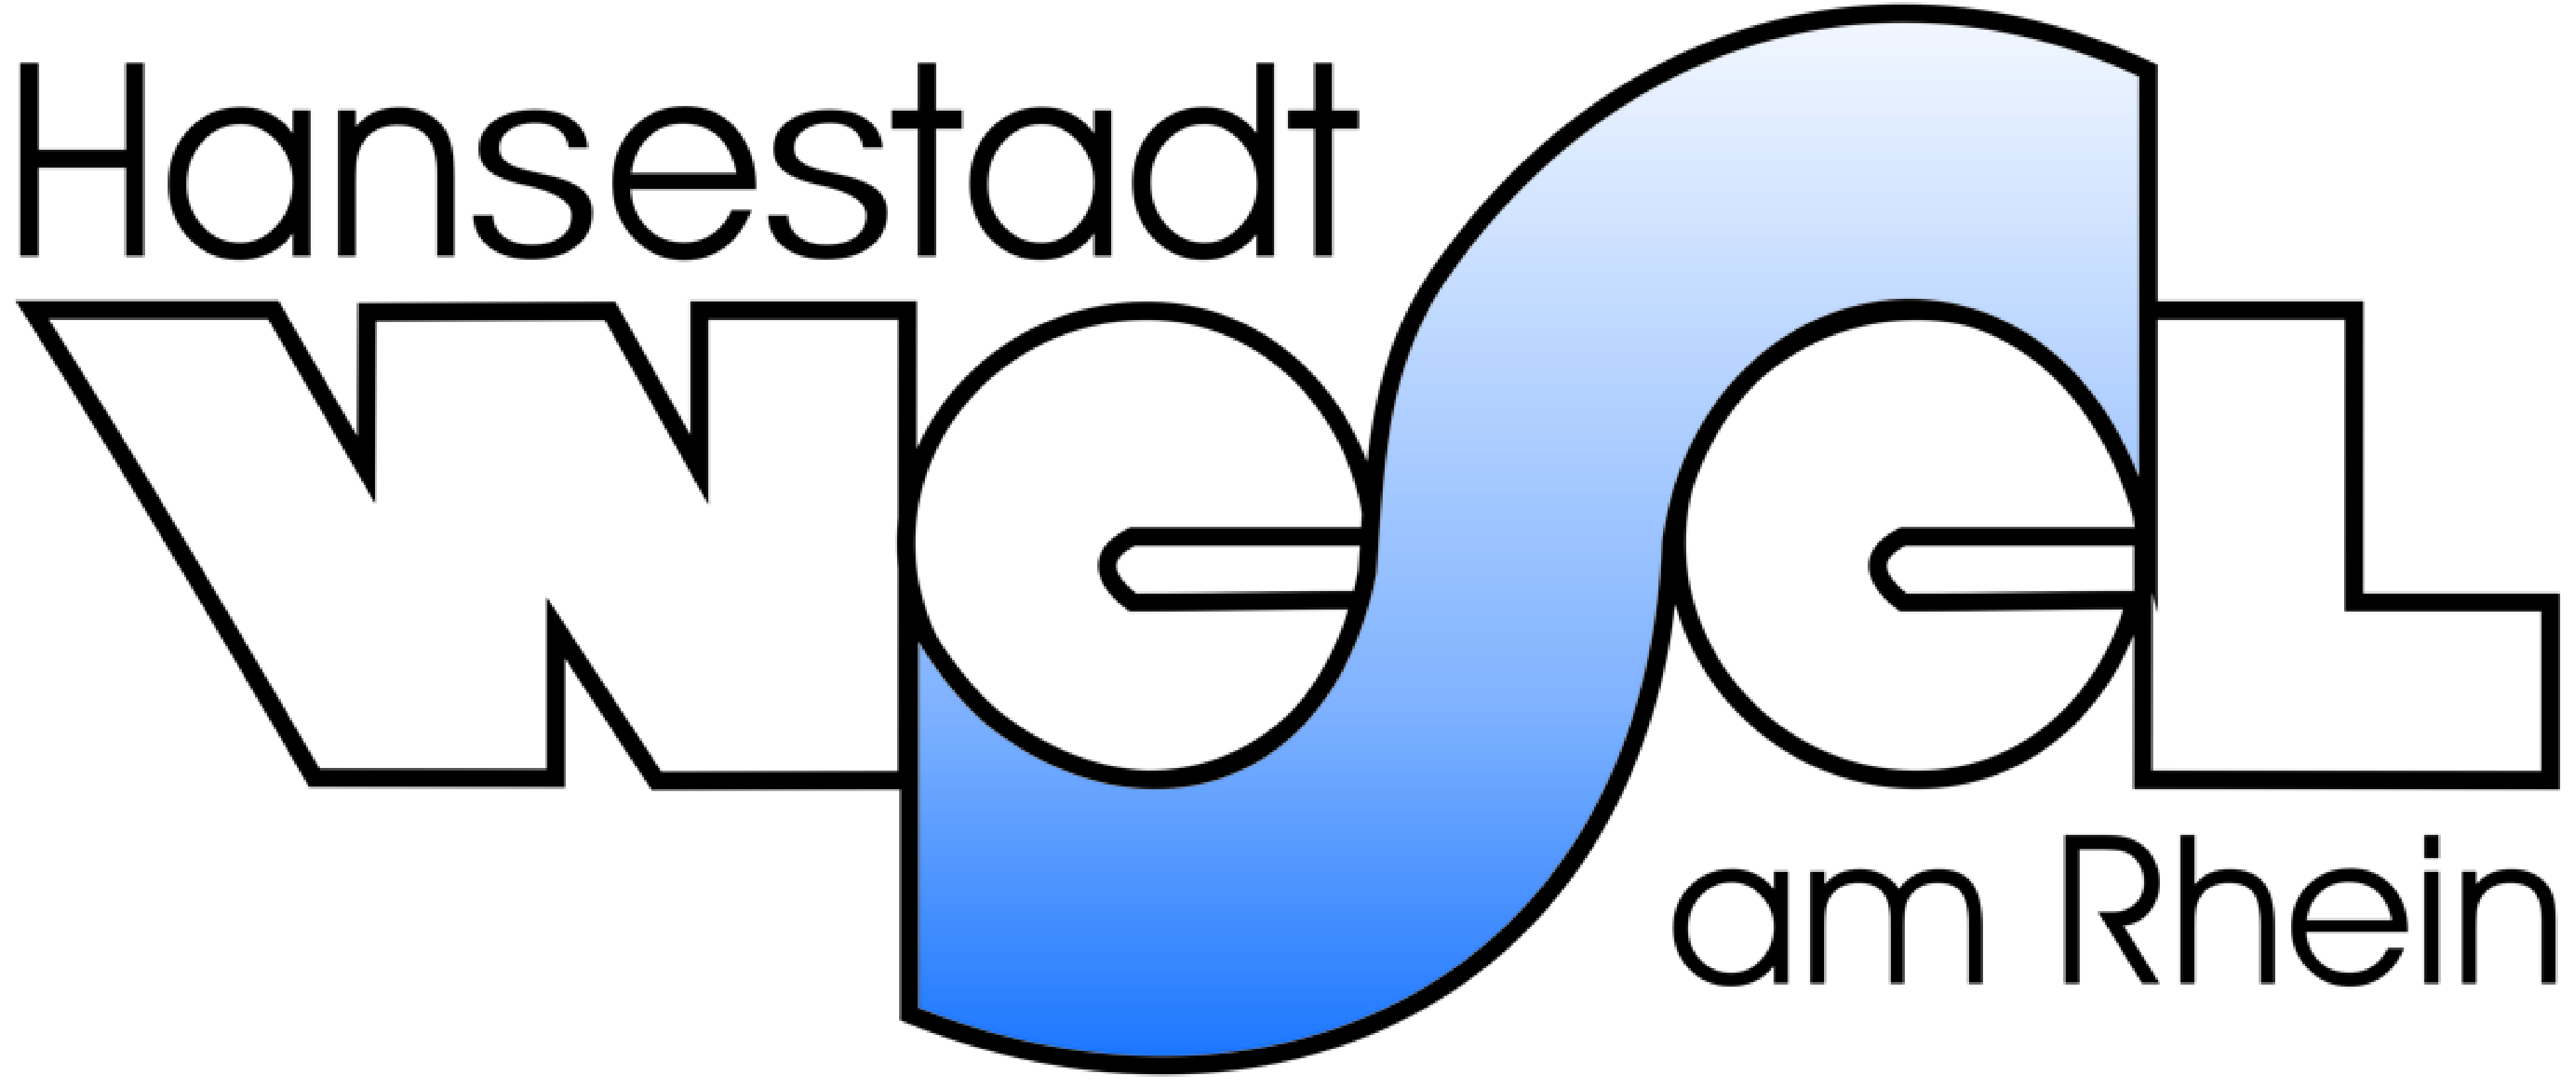 Stadt Wesel Logo.jpg